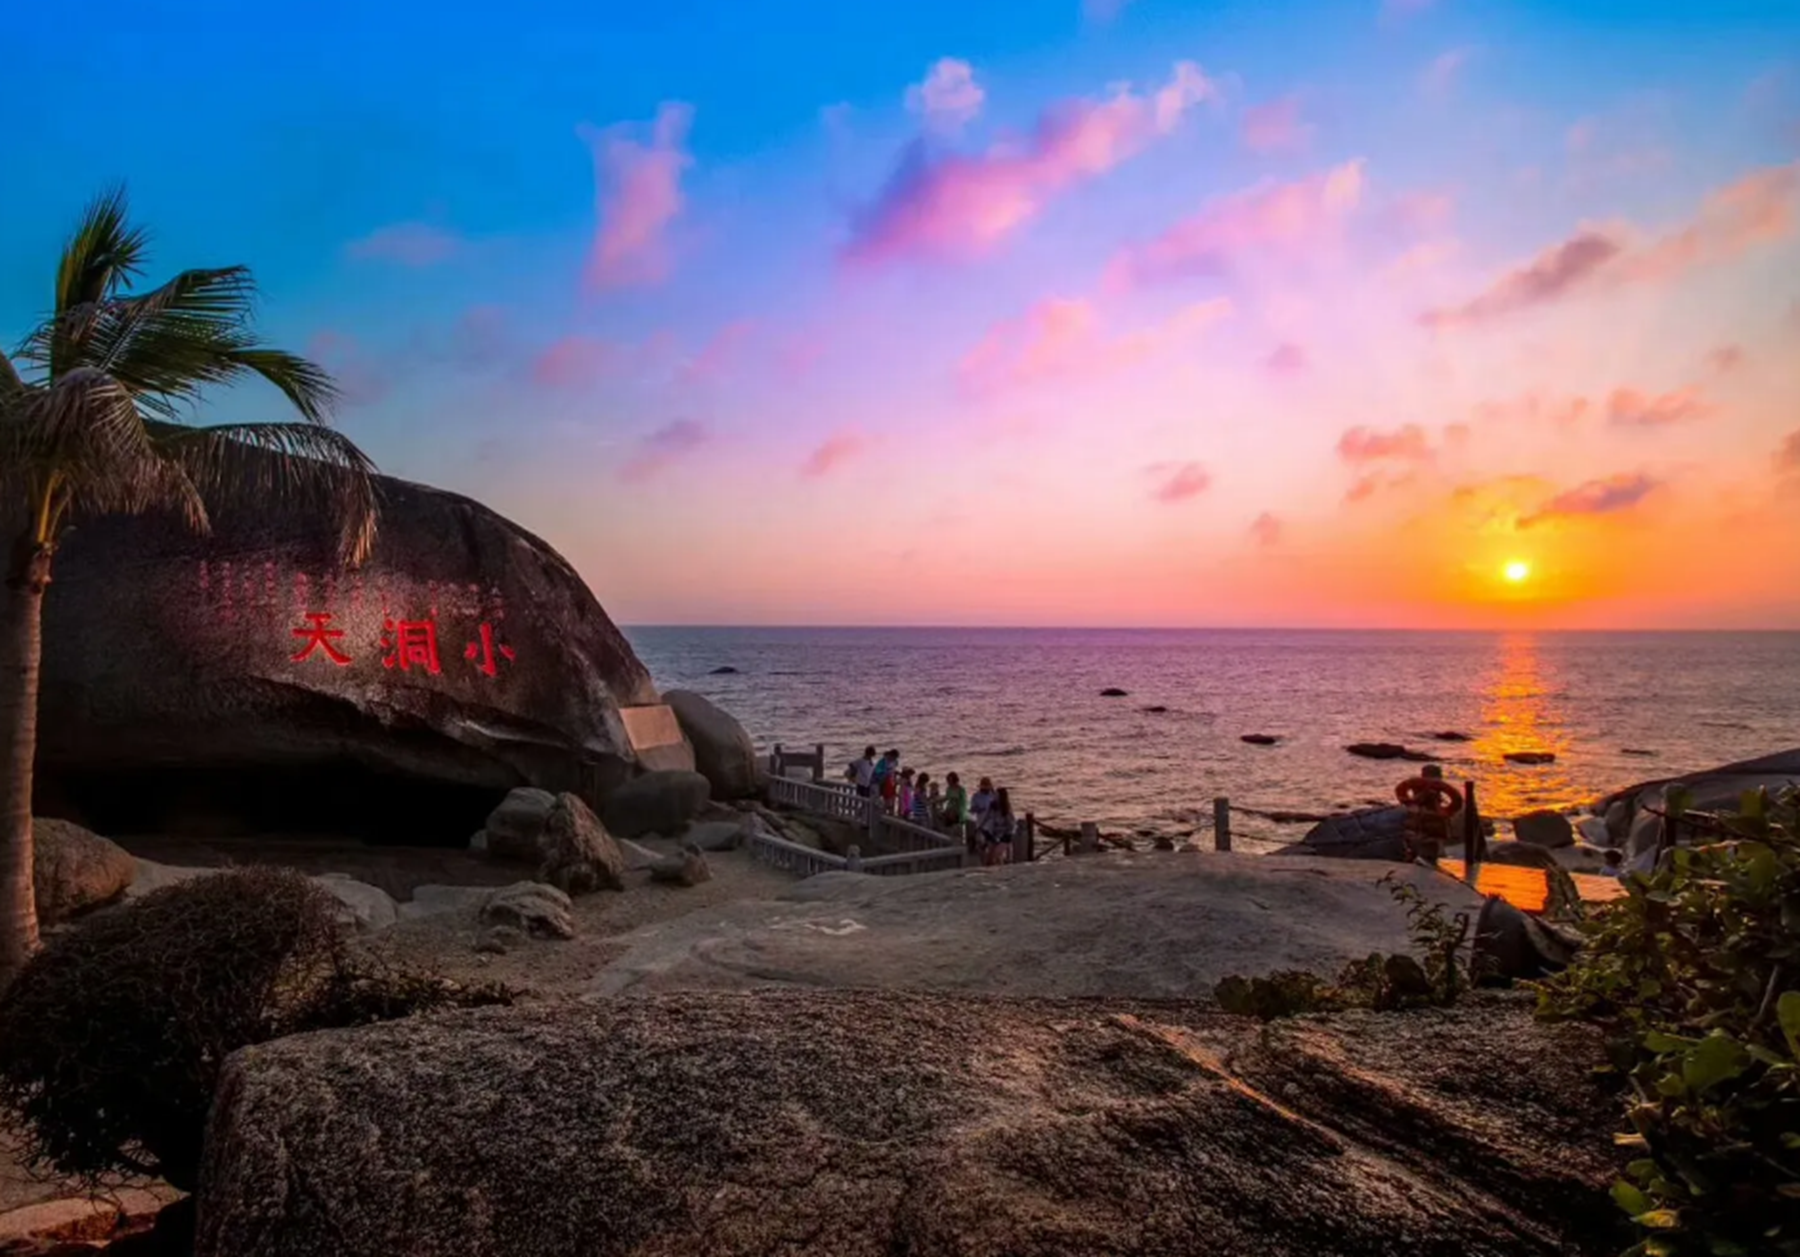 海南旅游景点排名前十图片